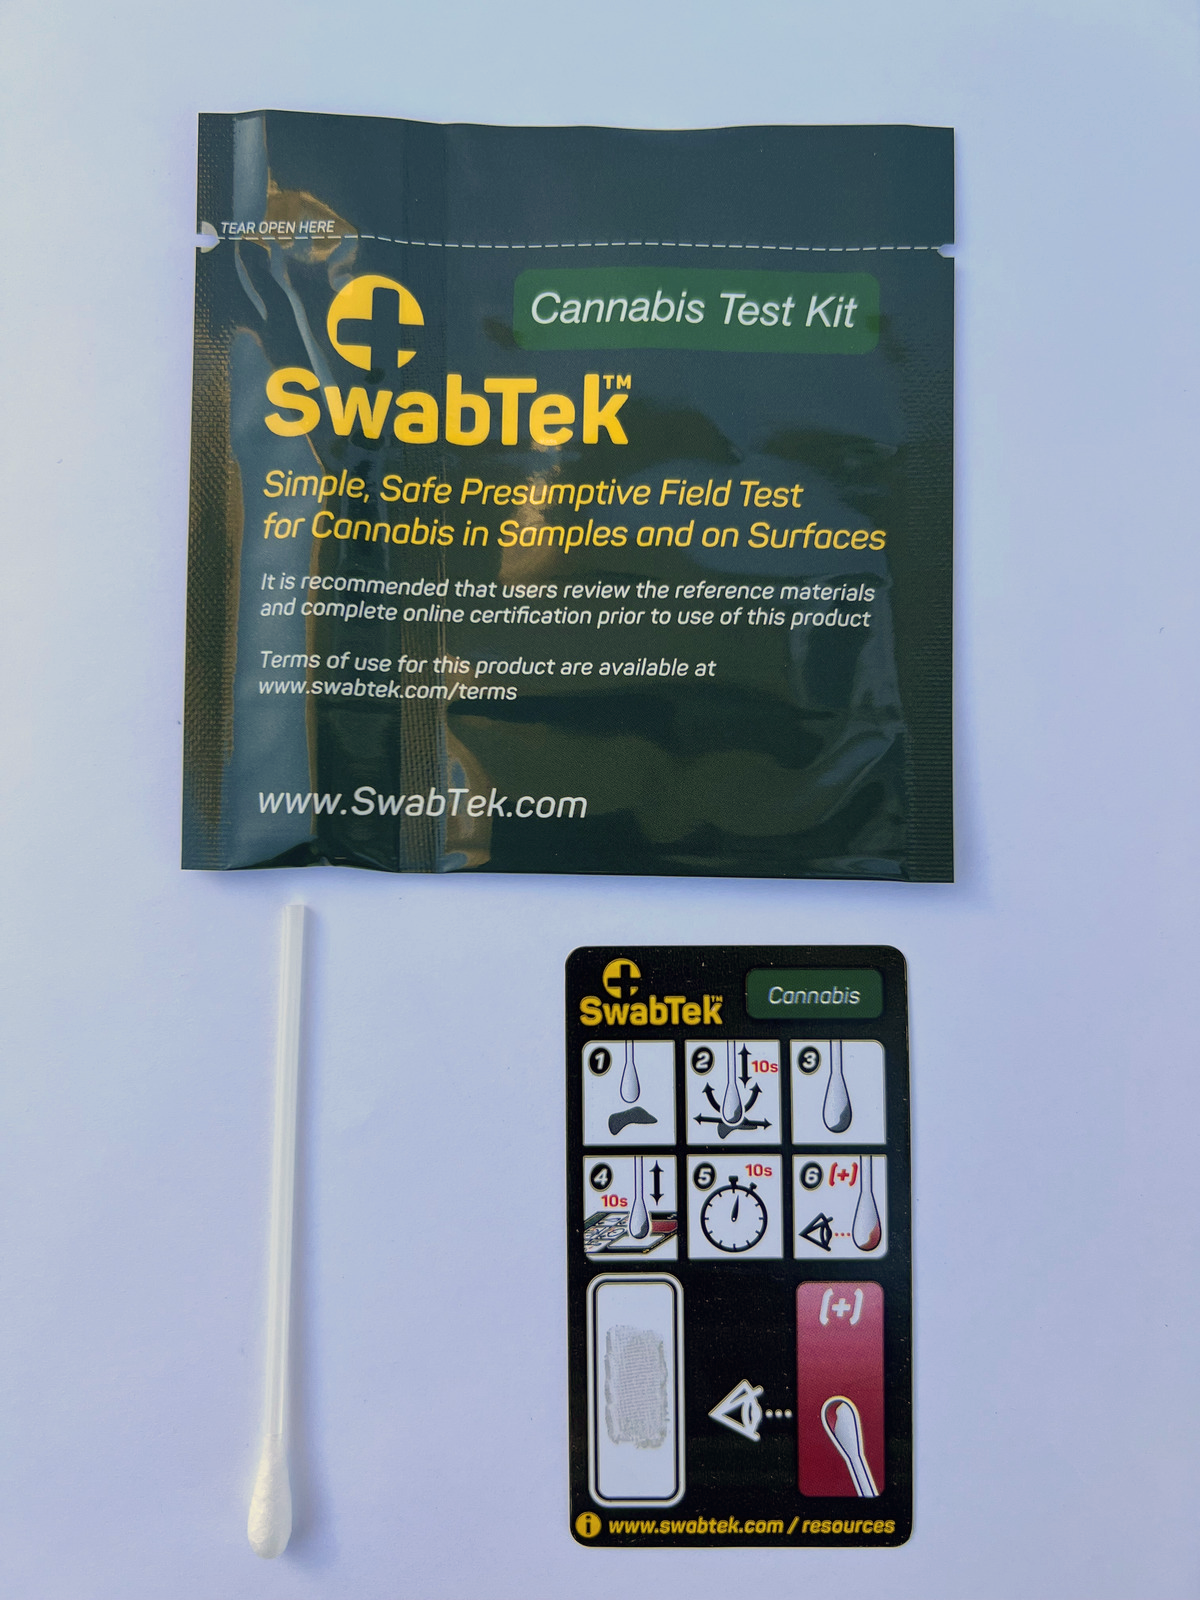 Test de cannabis THC, Test de dépistage du cannabis, Autotest cannabis